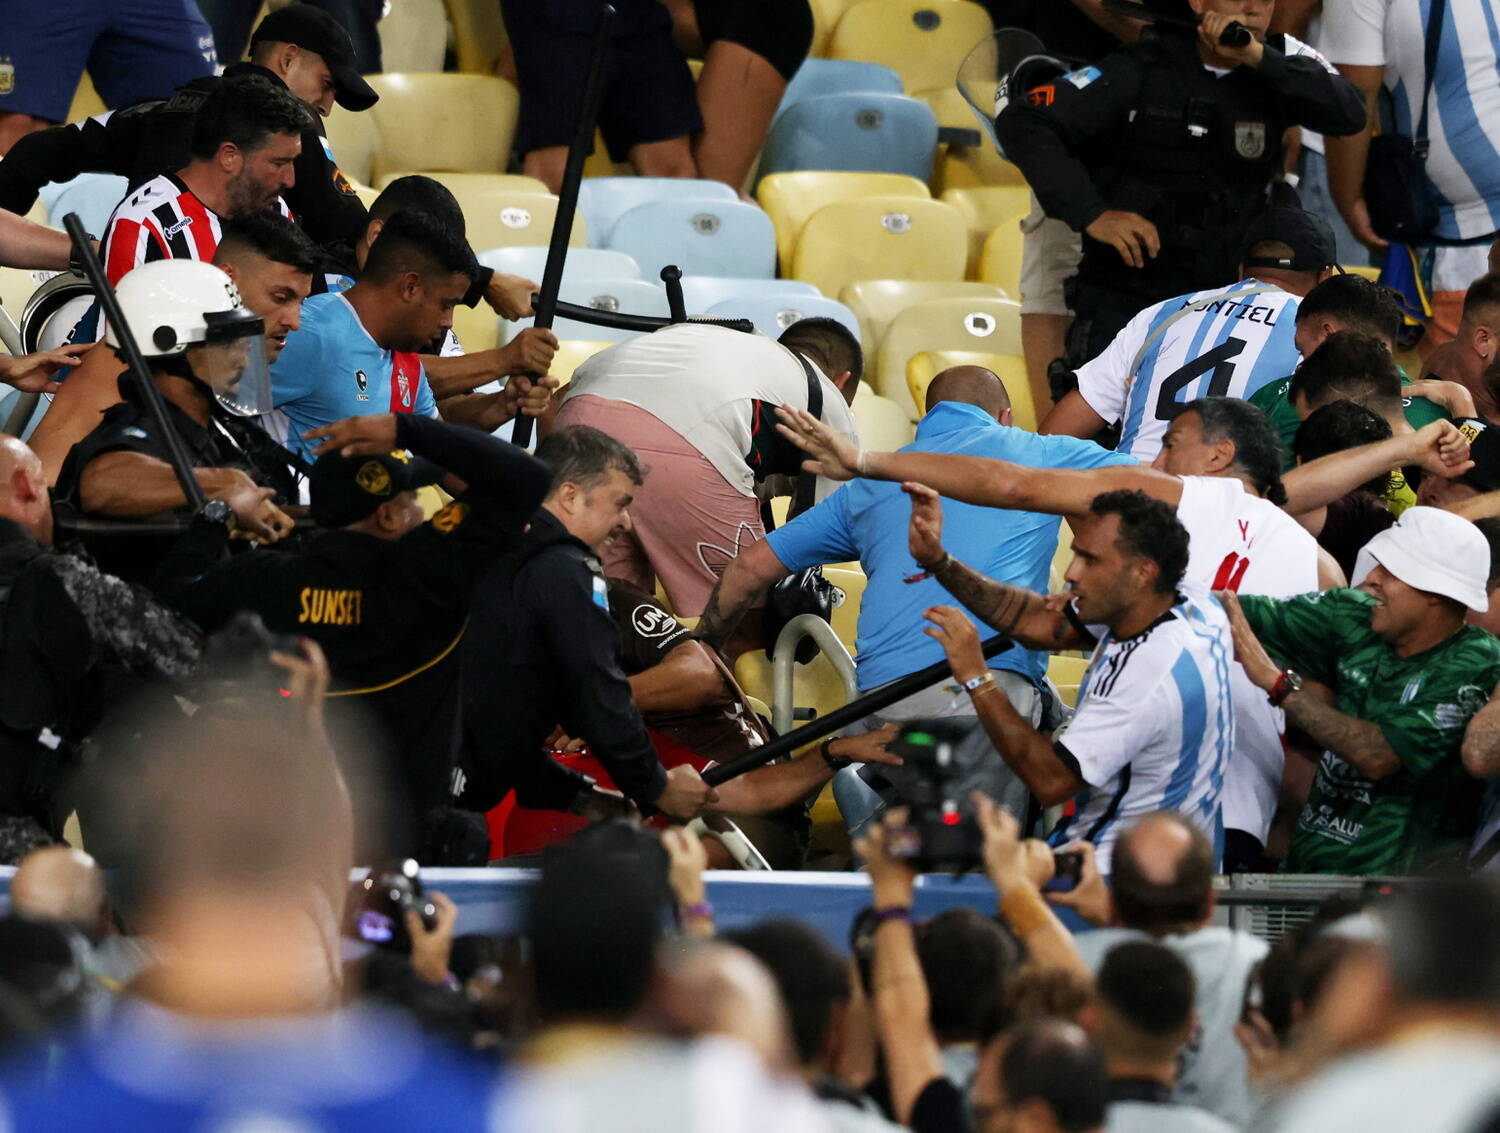 Antes do jogo, policiais atacam torcedores argentinos.Ação exagerada para tentar corrigir péssima organização